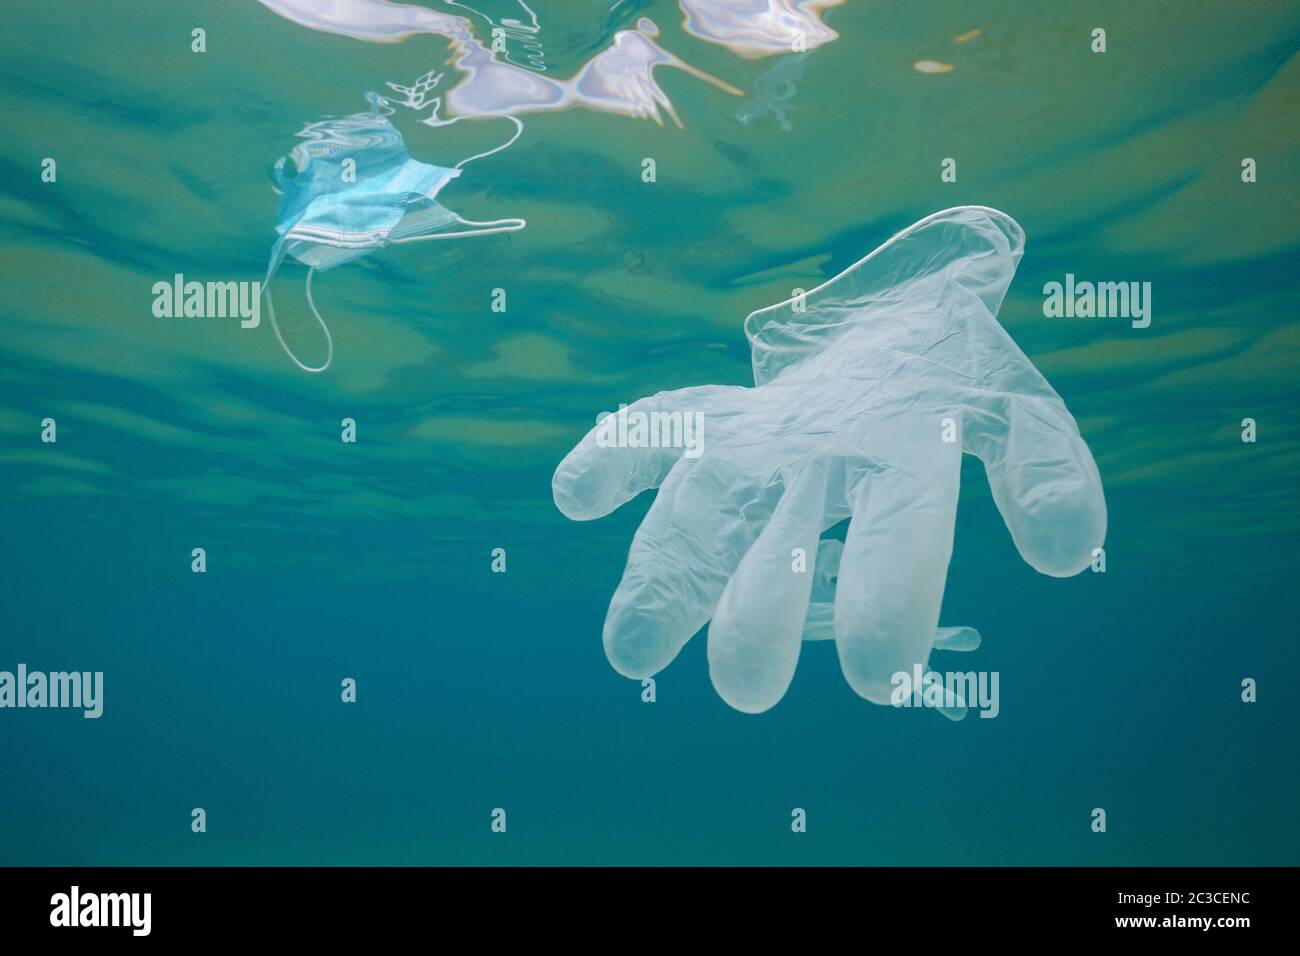 Handschuh und Gesichtsmaske unter Wasser, Meer Plastikmüll Verschmutzung seit Coronavirus COVID-19 Pandemie Stockfoto